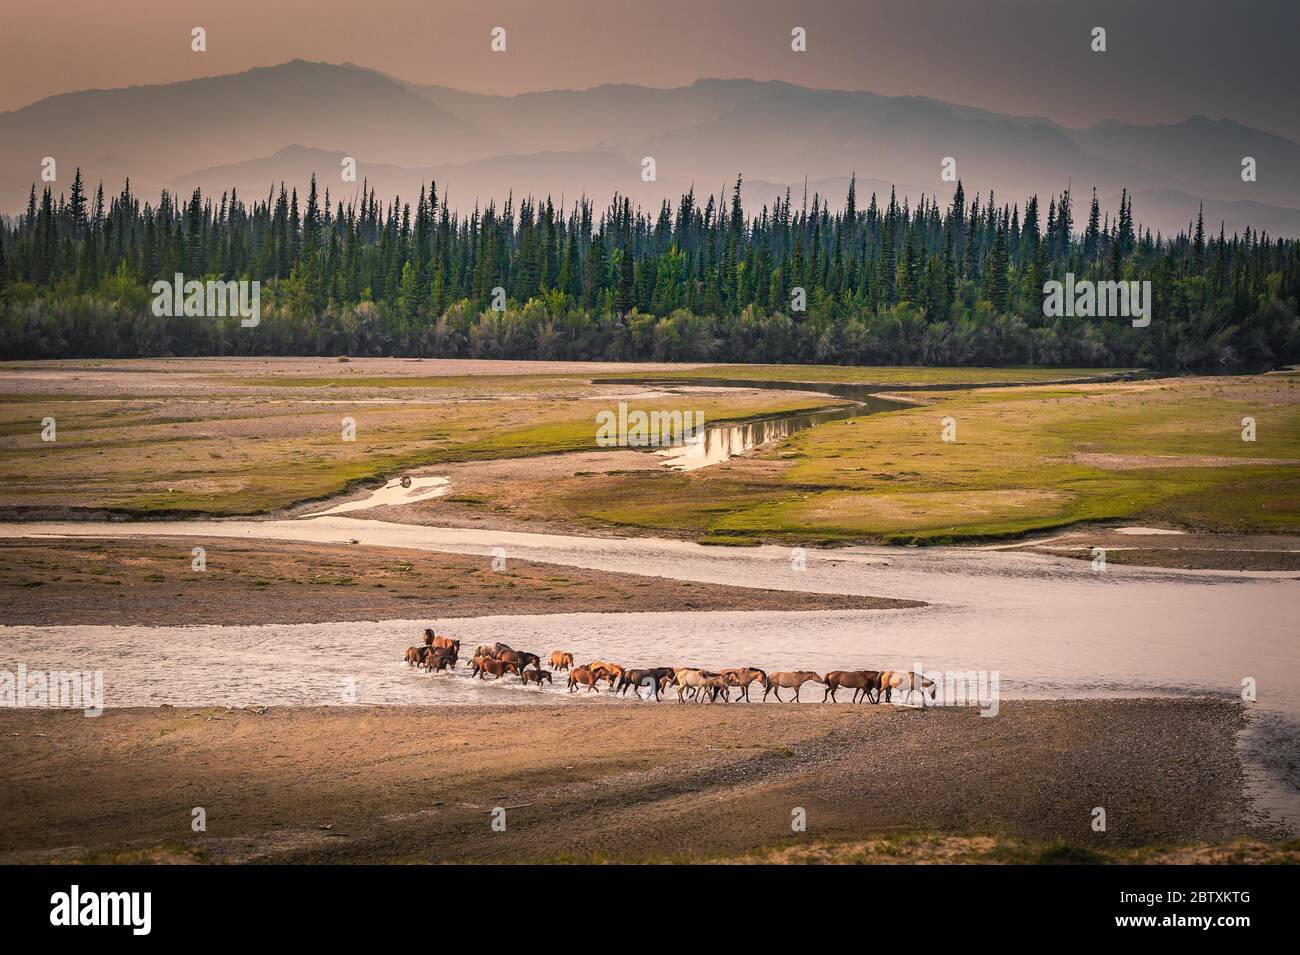 Die Herde der Pferde überquert den Fluss Tes, hinter den sibirischen Tannen (Abies sibirica) vor dem Gebirge, Uvs Provinz, Mongolei Stockfoto